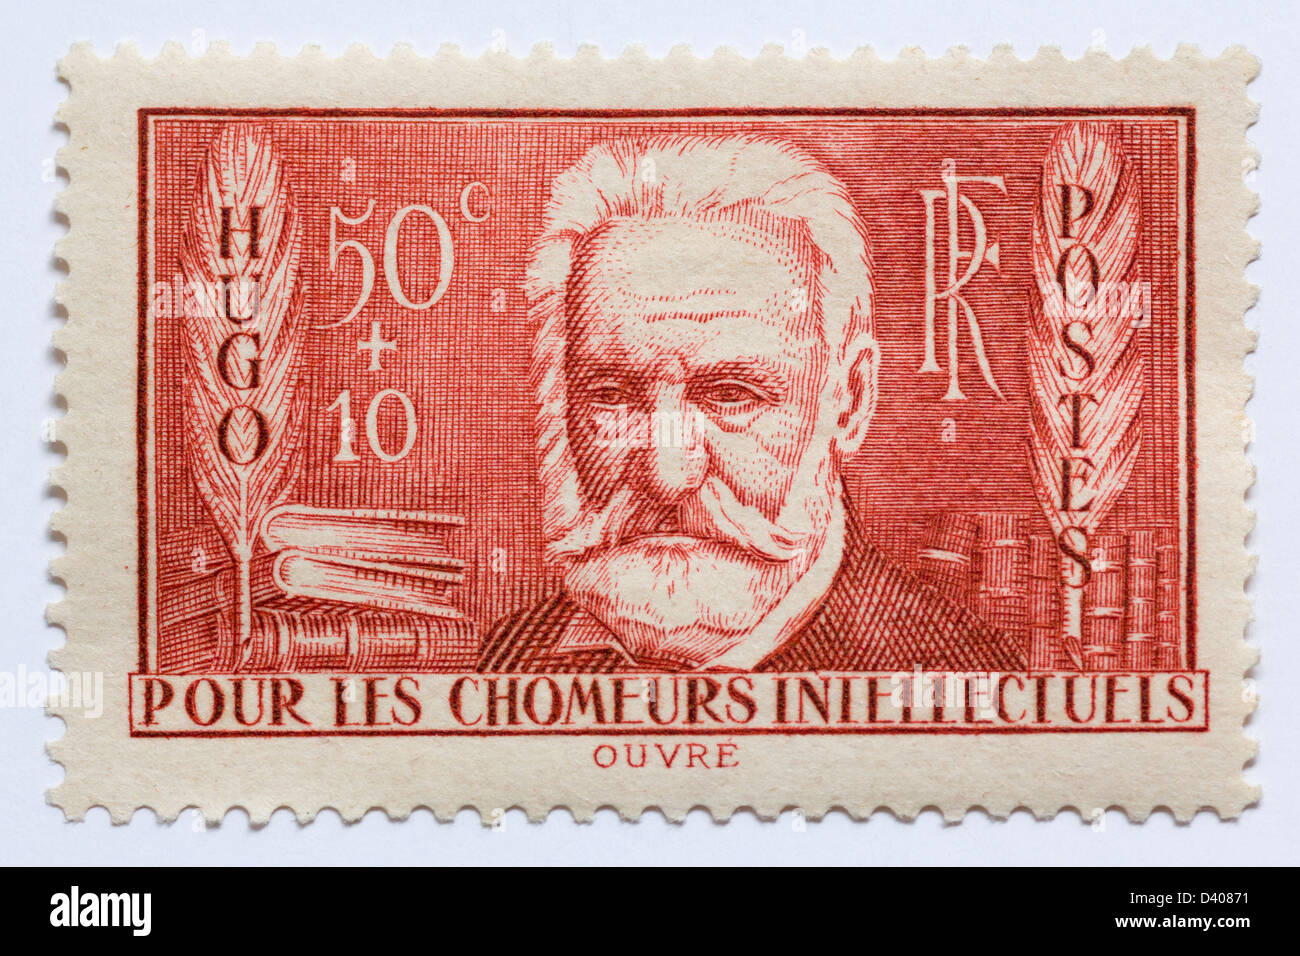 Victor Hugo en un sello francés de 1936, que incluye un cargo de 10c complementario un desempleado de fondos de caridad intelectual. Foto de stock